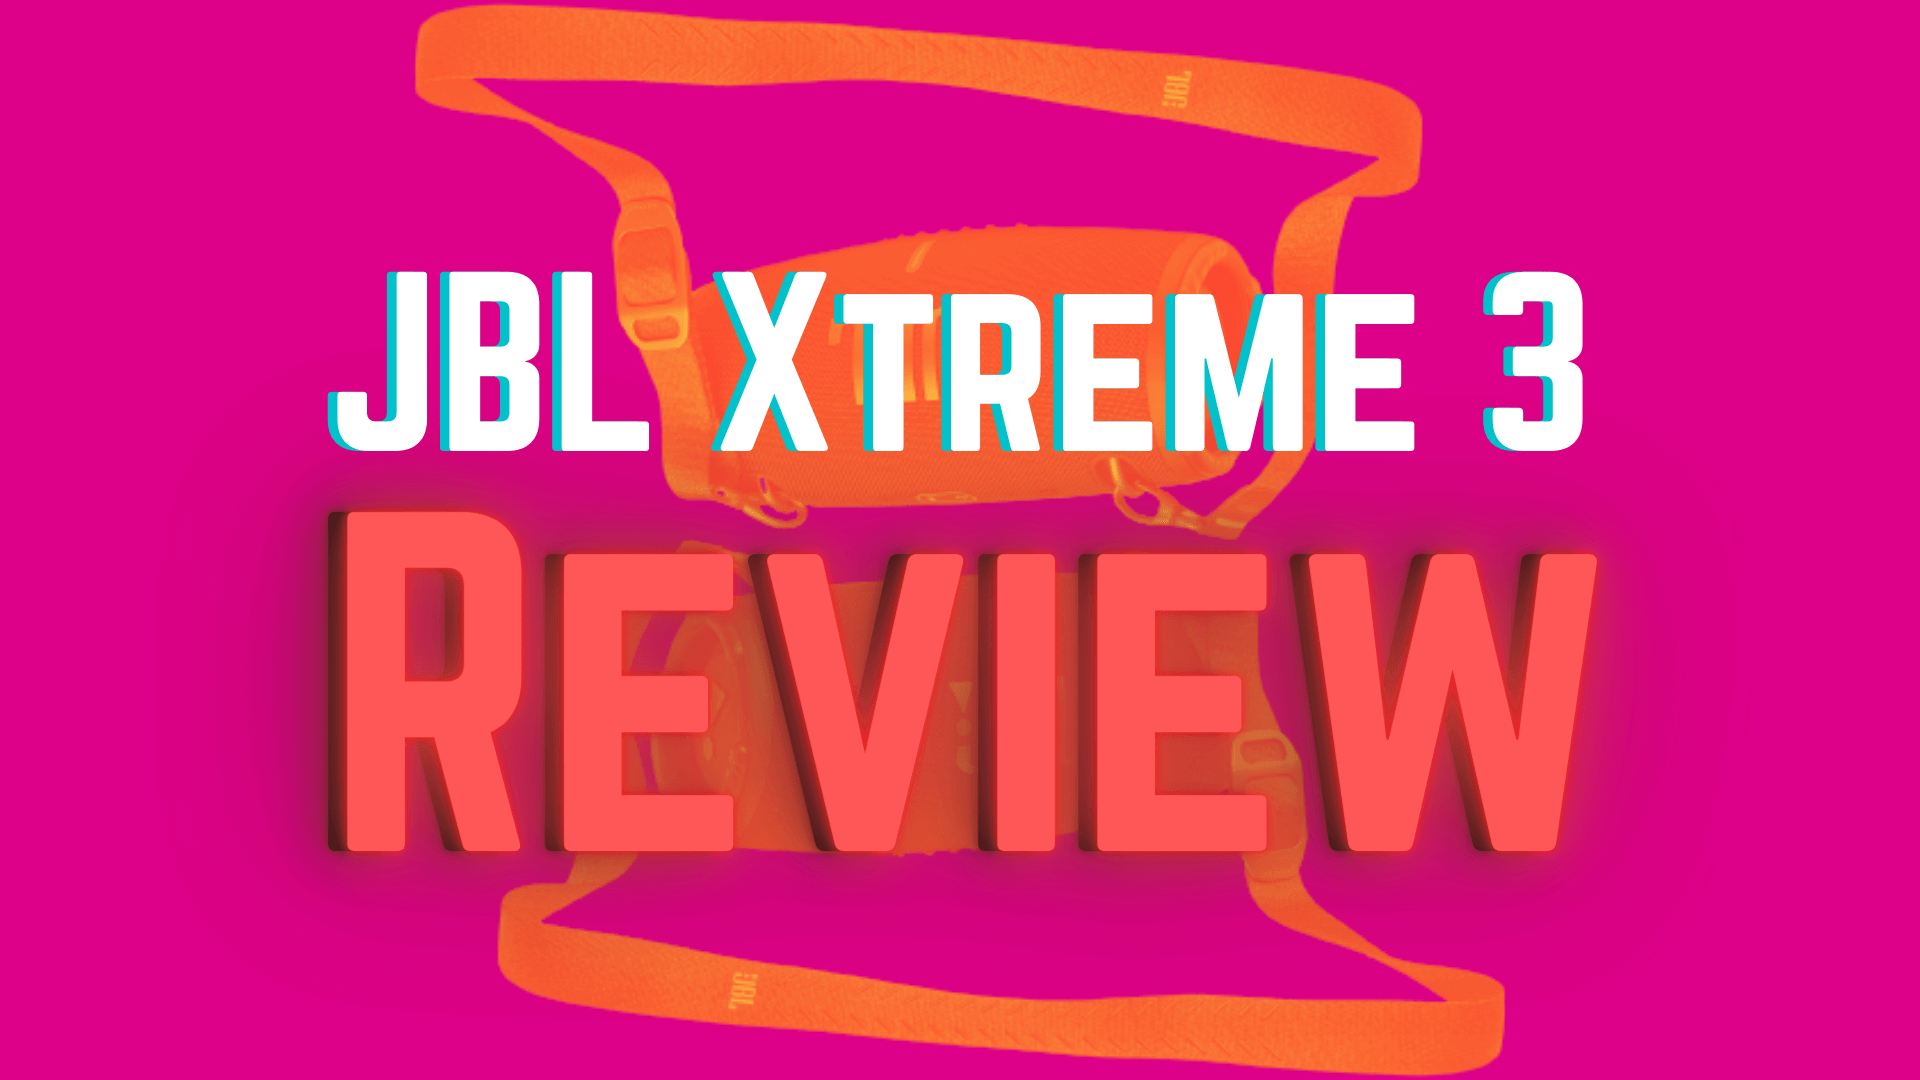 JBL Xtreme 3 Review